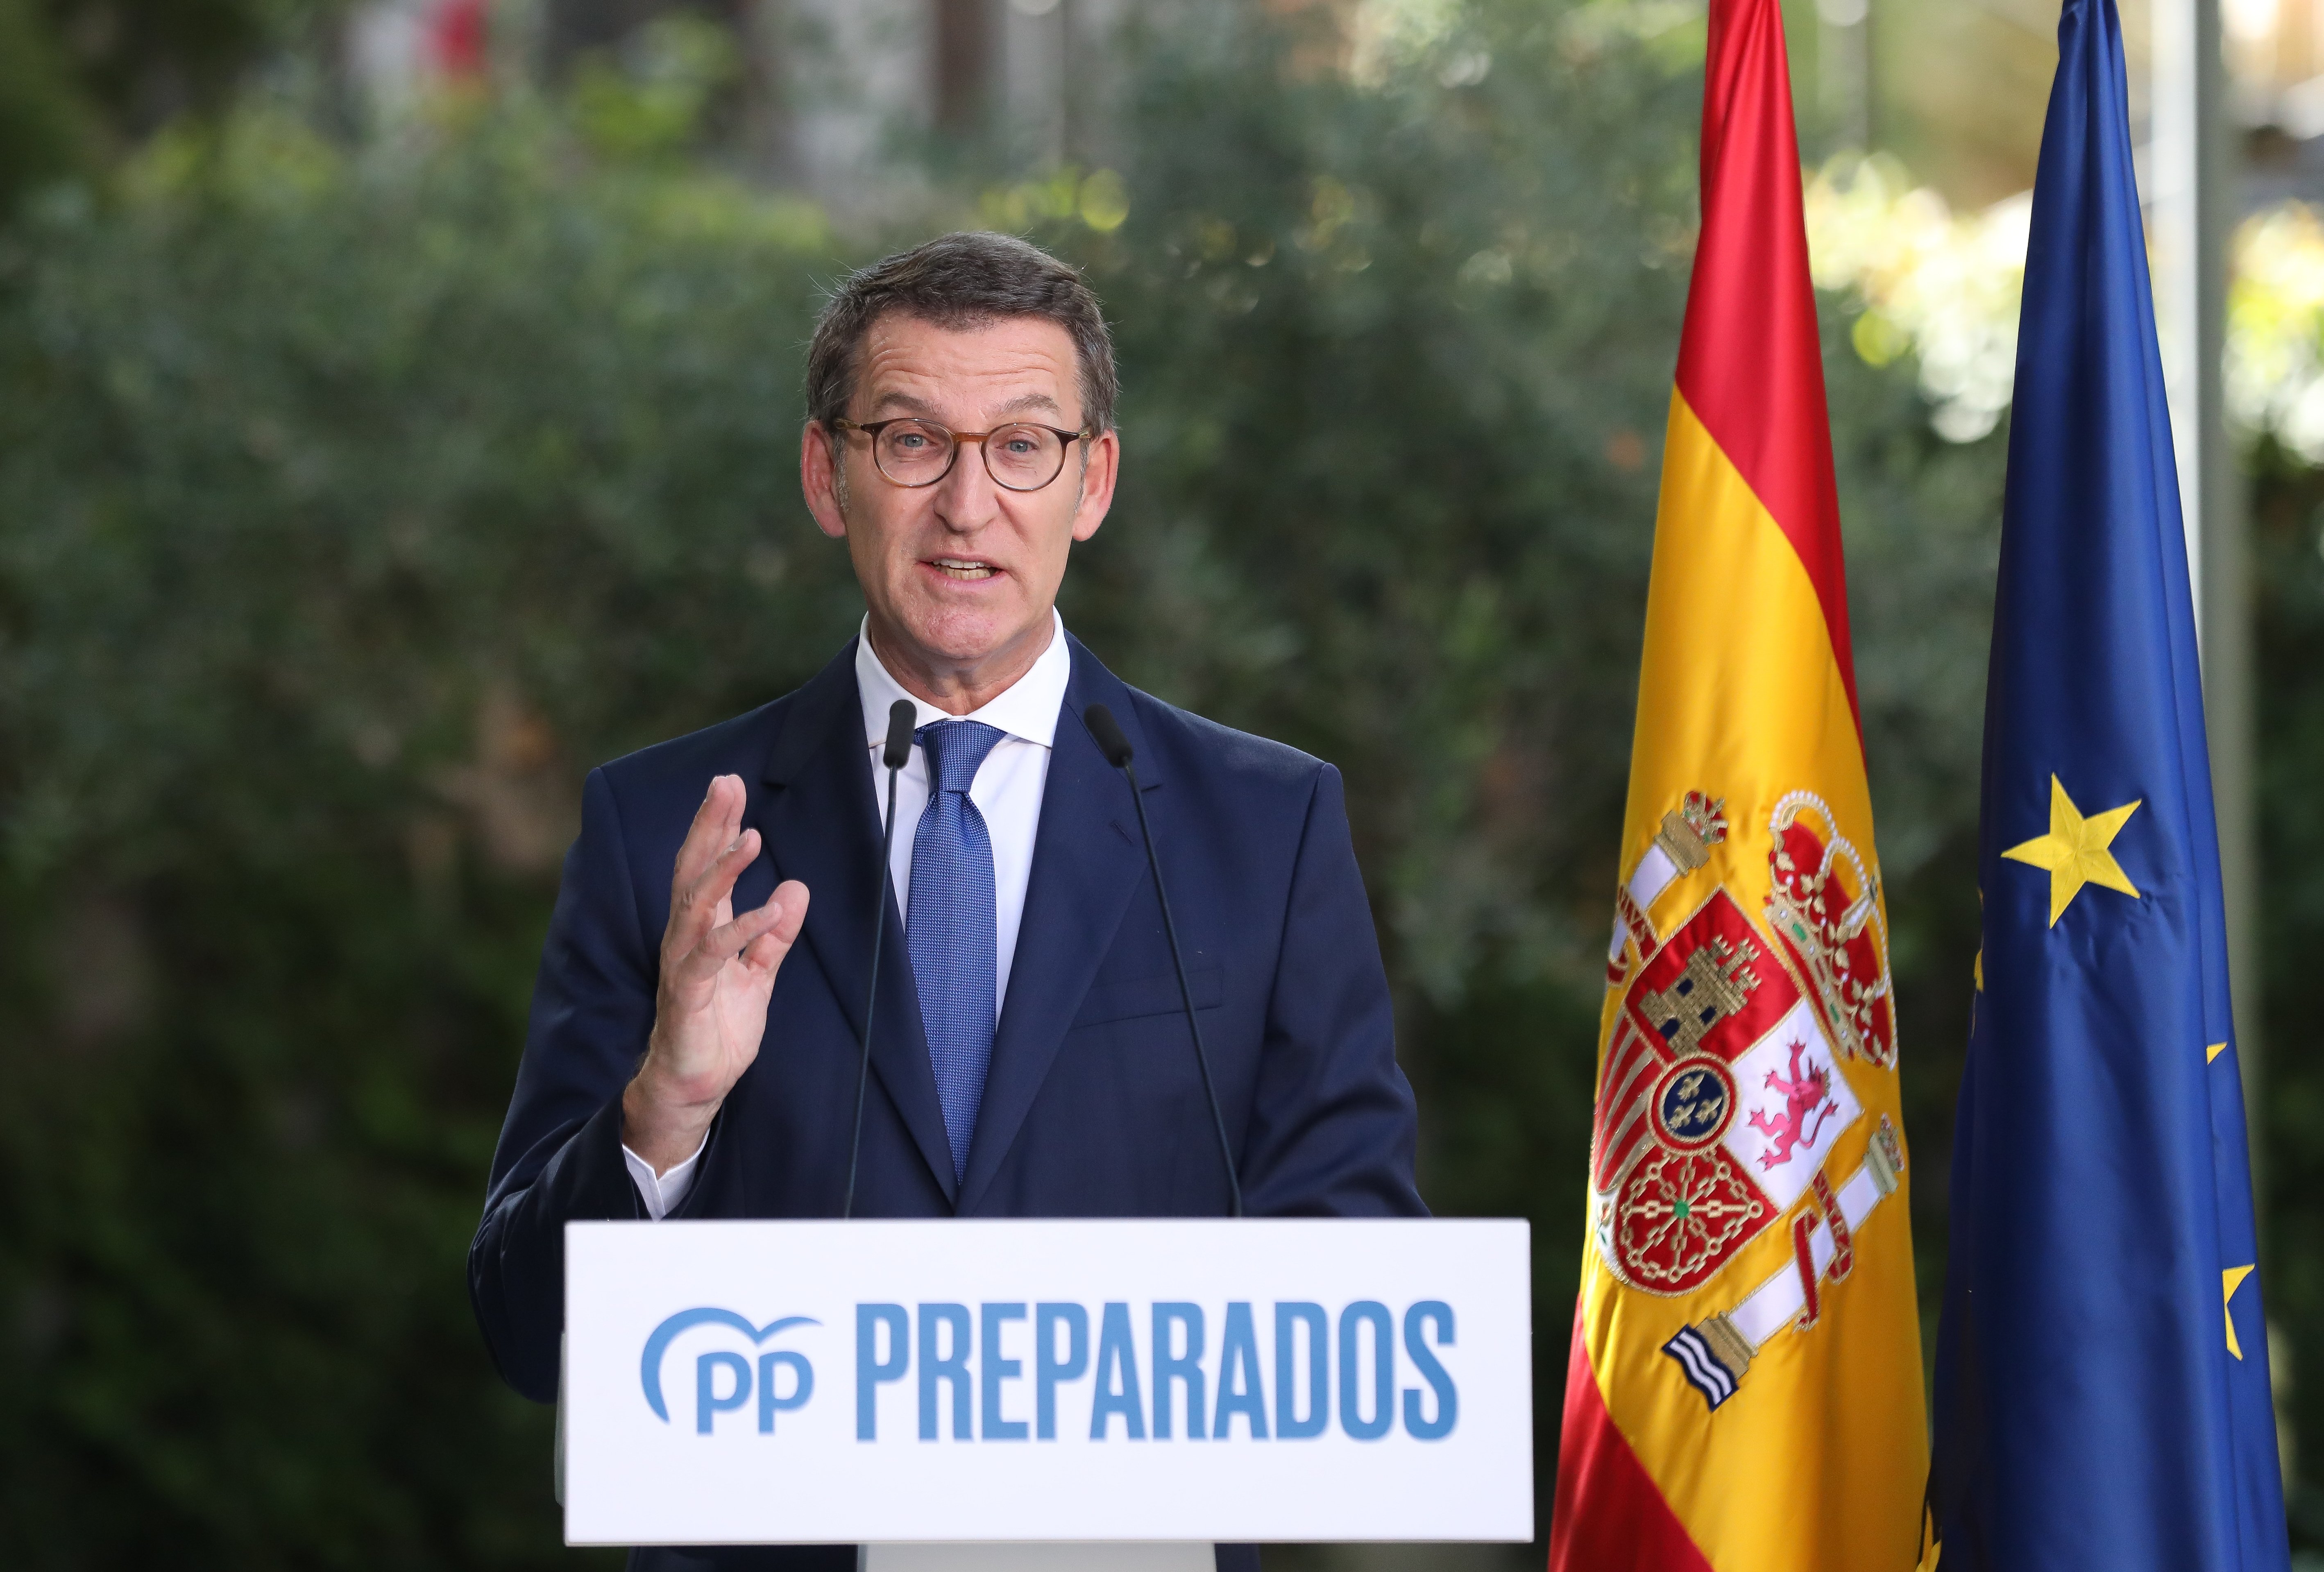 El PP de Feijóo sigue ganando terreno al PSOE y lo superaría en 50 diputados, según una encuesta